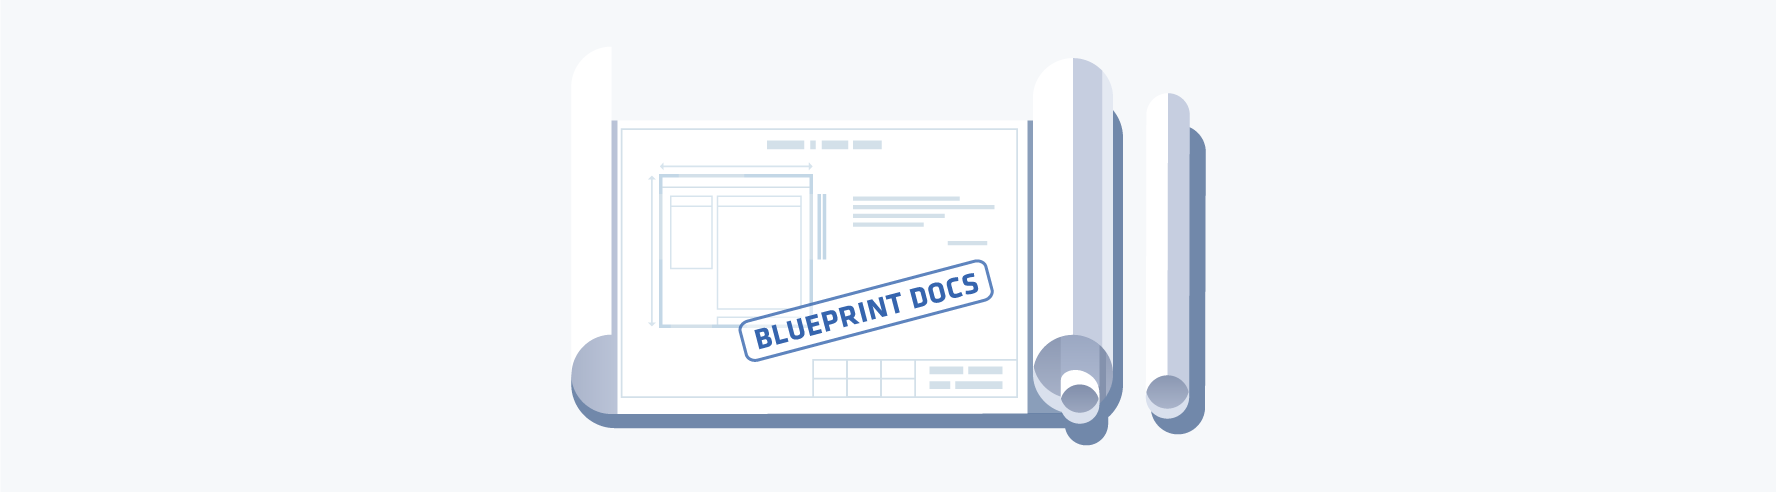 Blueprint Docs